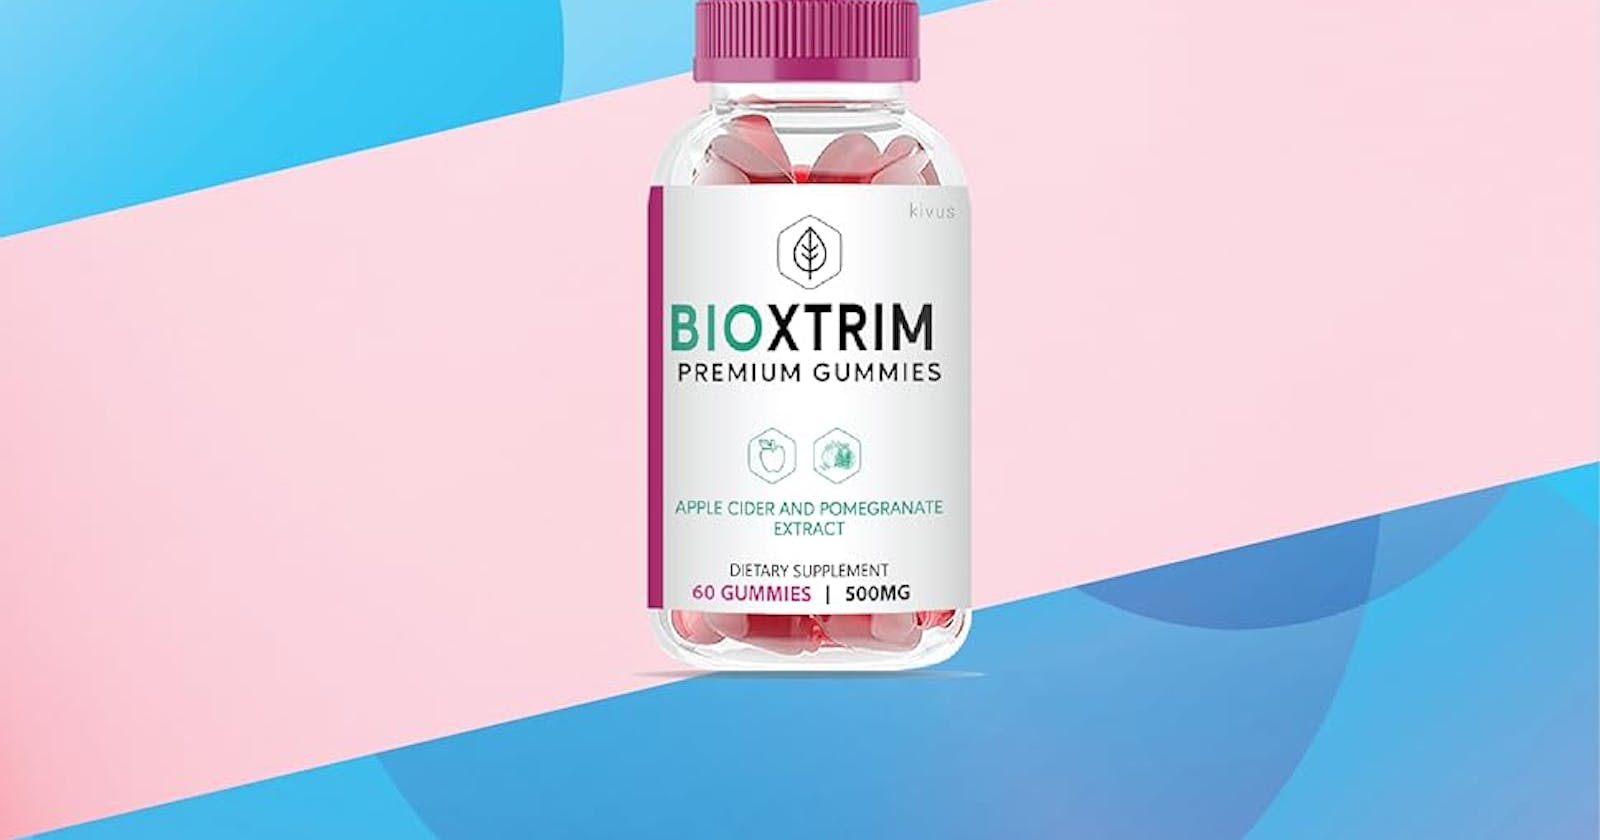 BioXtrim Premium Gummies 【New Update]】 Price & Where To Buy?